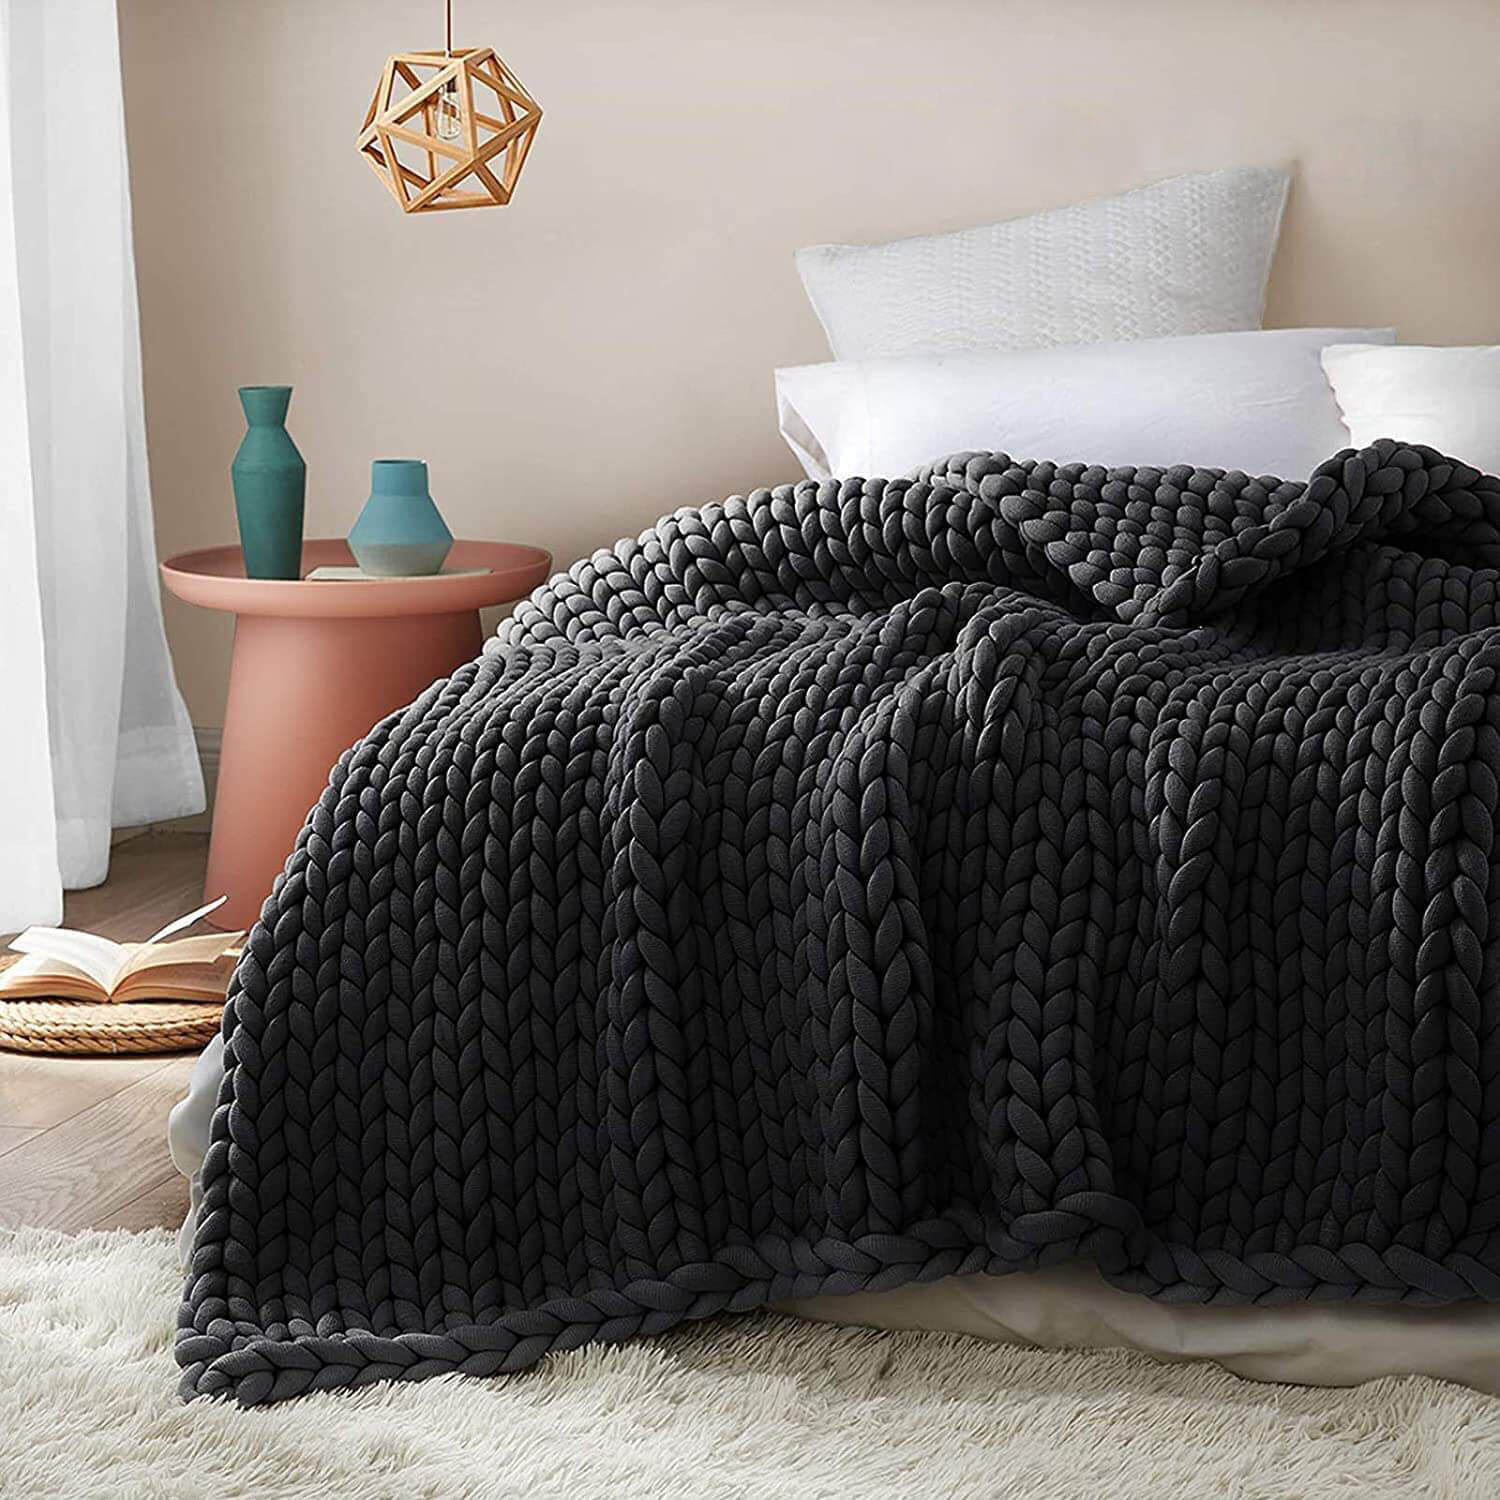 The Metfine Chunky knit Blanket - Metfine